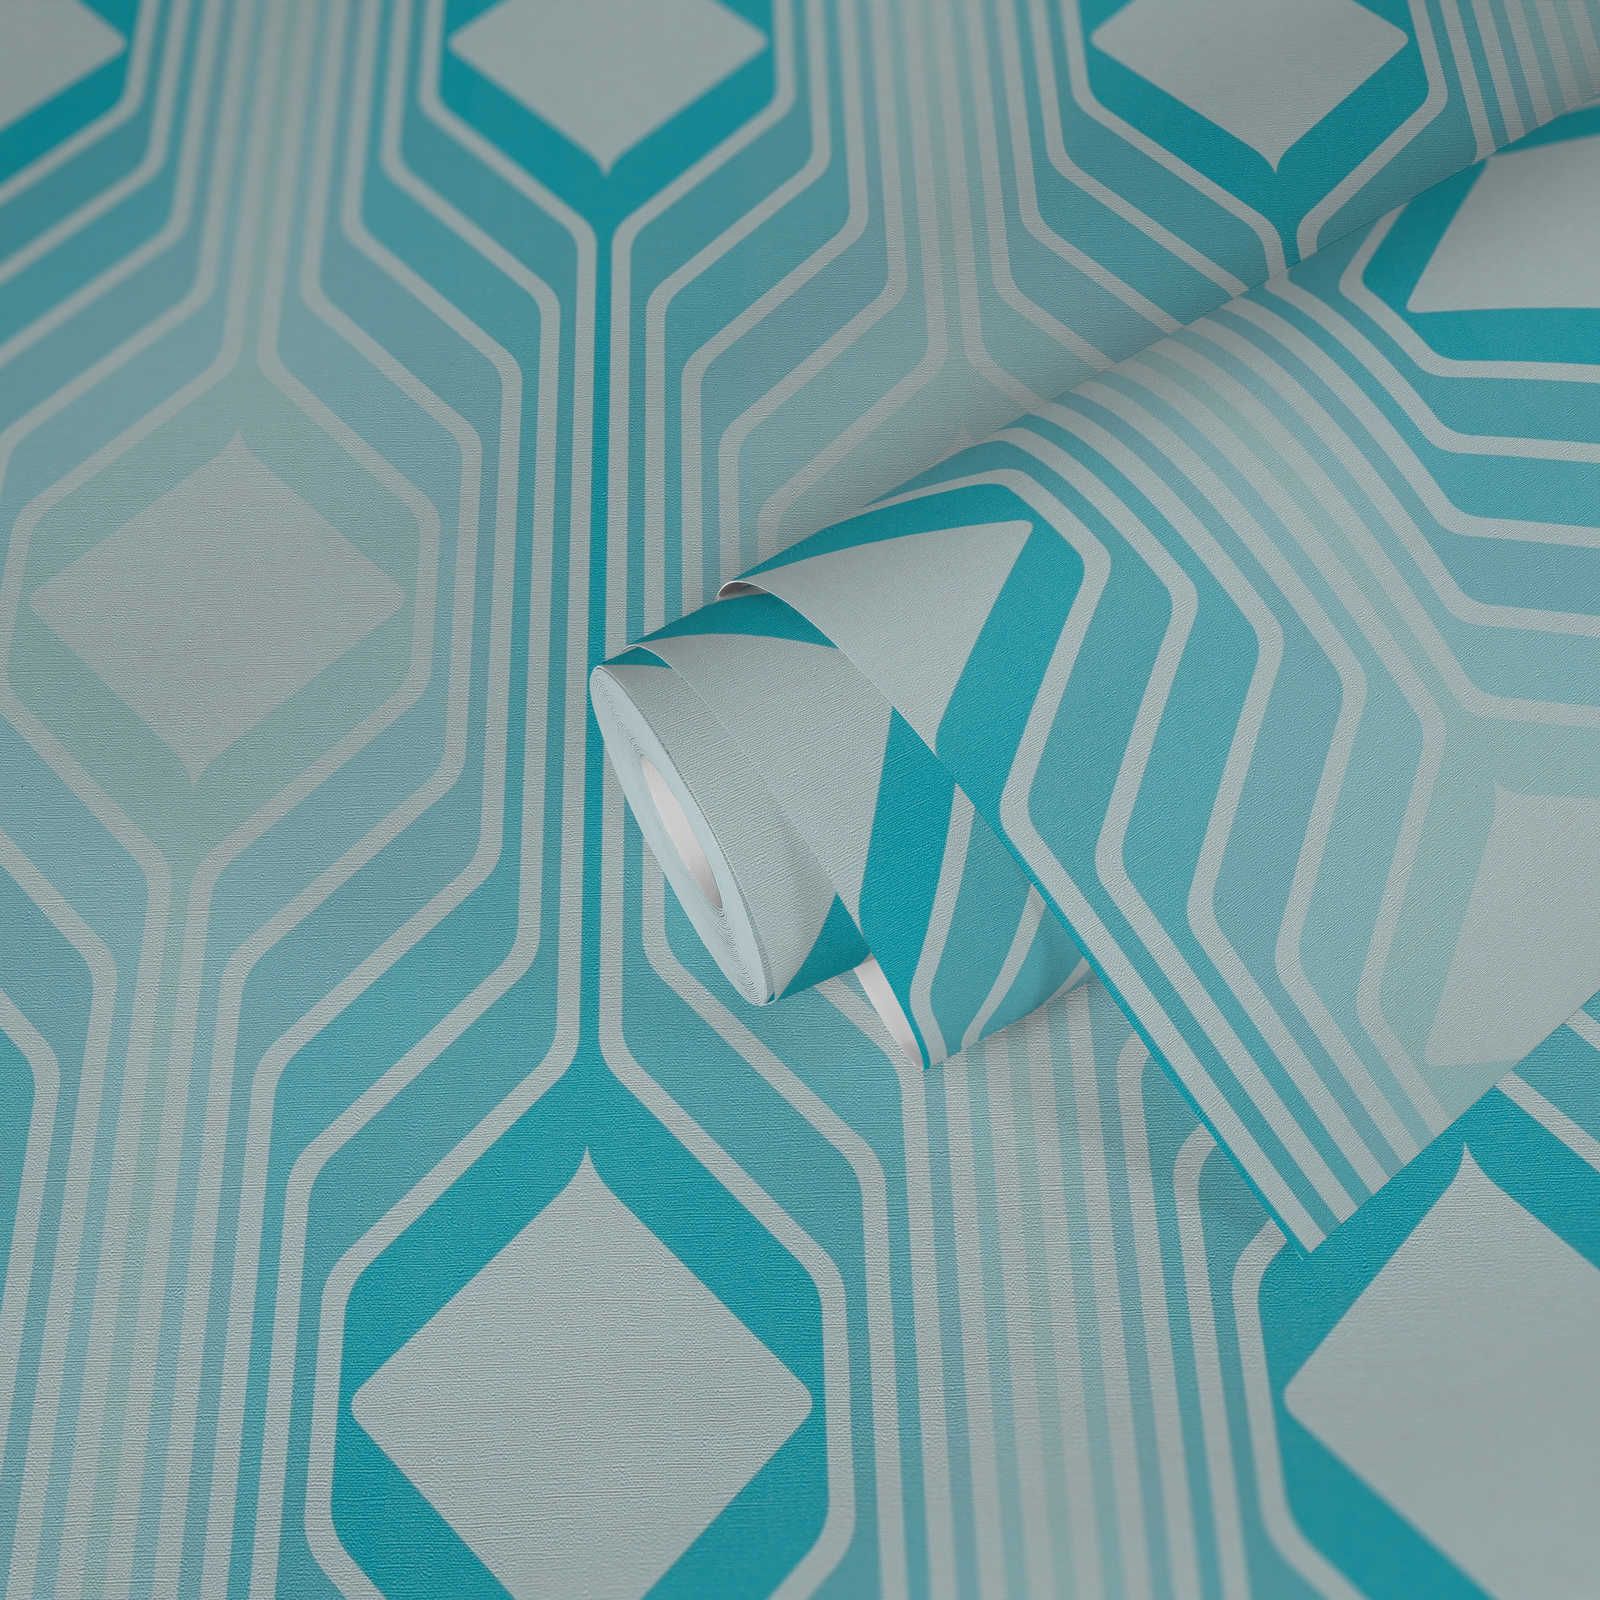             Motif losange sur papier peint intissé rétro - bleu, bleu clair, turquoise
        